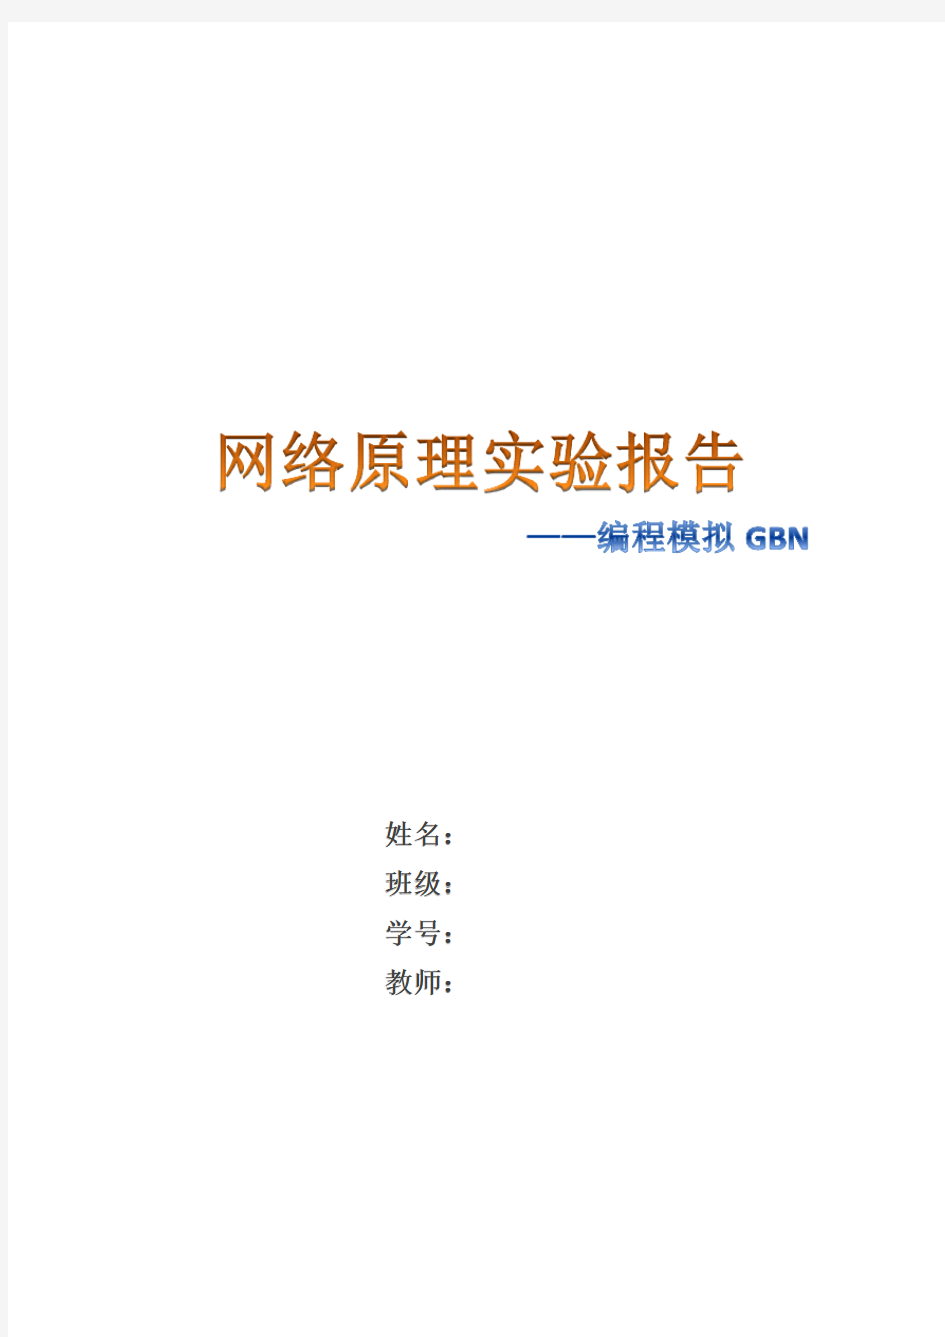 网络原理实验报告(GBN)